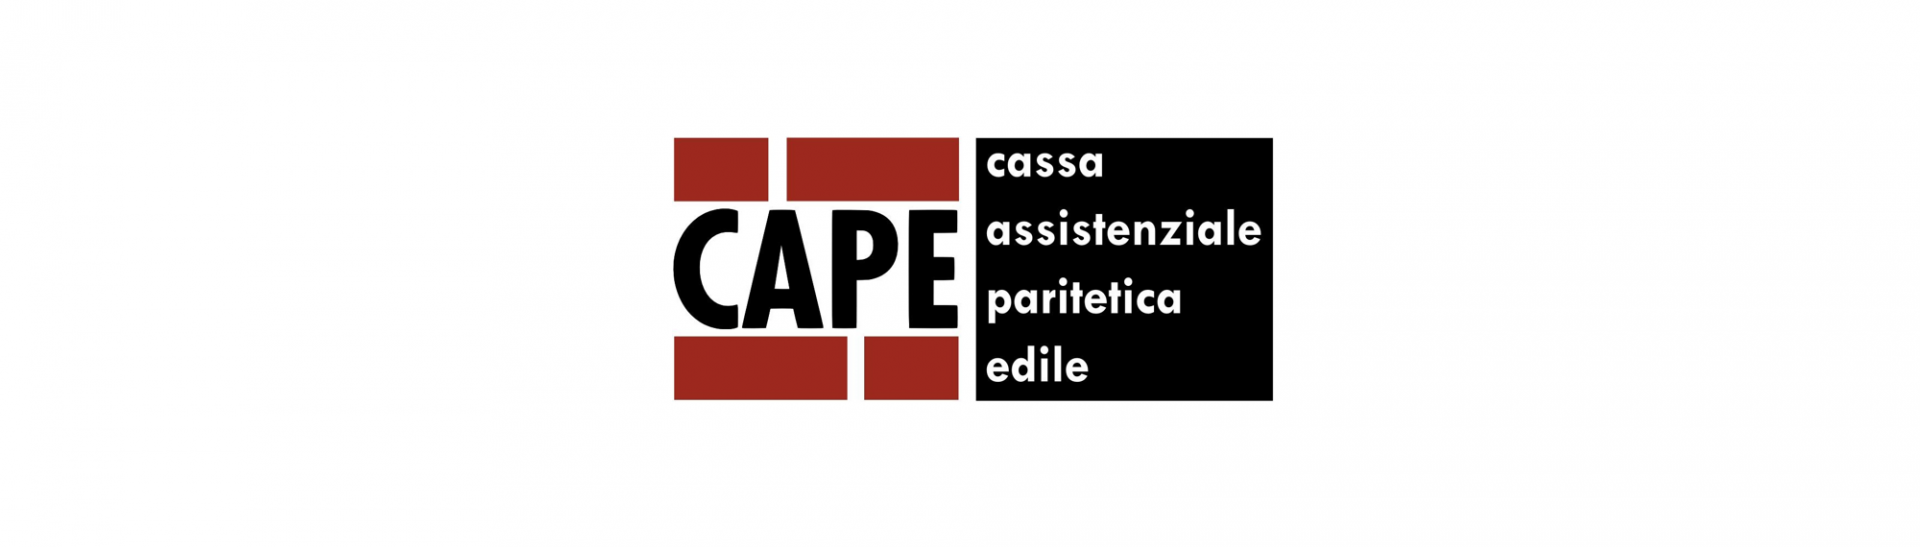 CAPE - cassa assistenziale paritetica edile - 